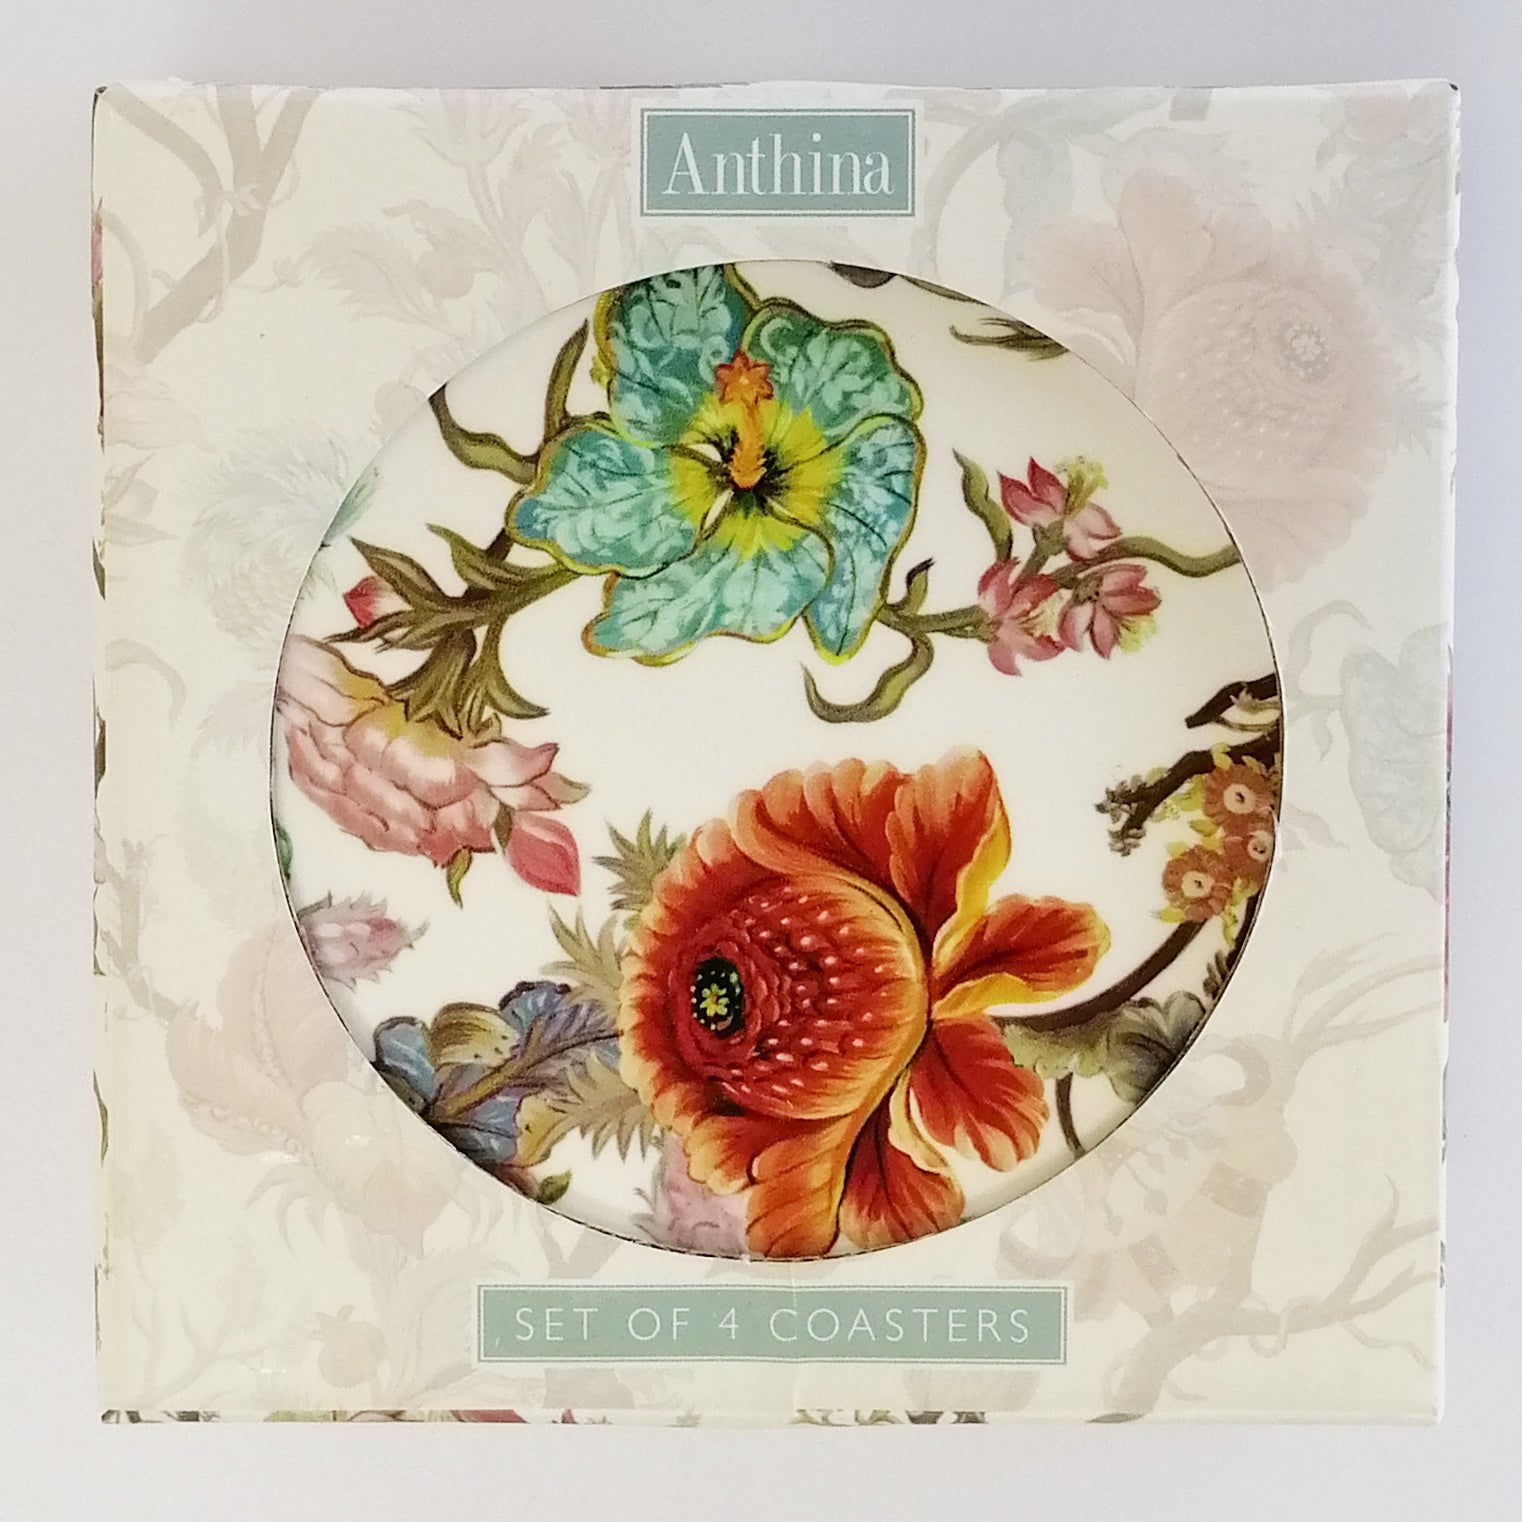 Anthina' Coasters - Set of 4